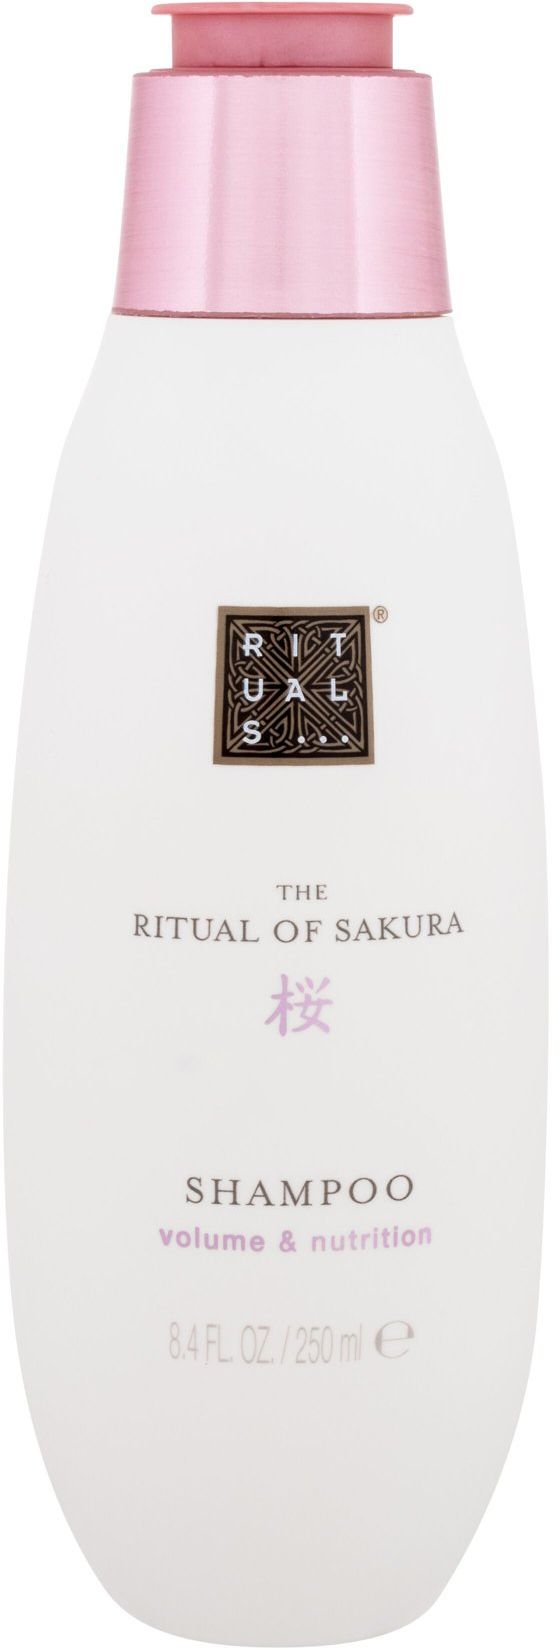 Rituals of Sakura Inhaltsstoffe & Erfahrungen